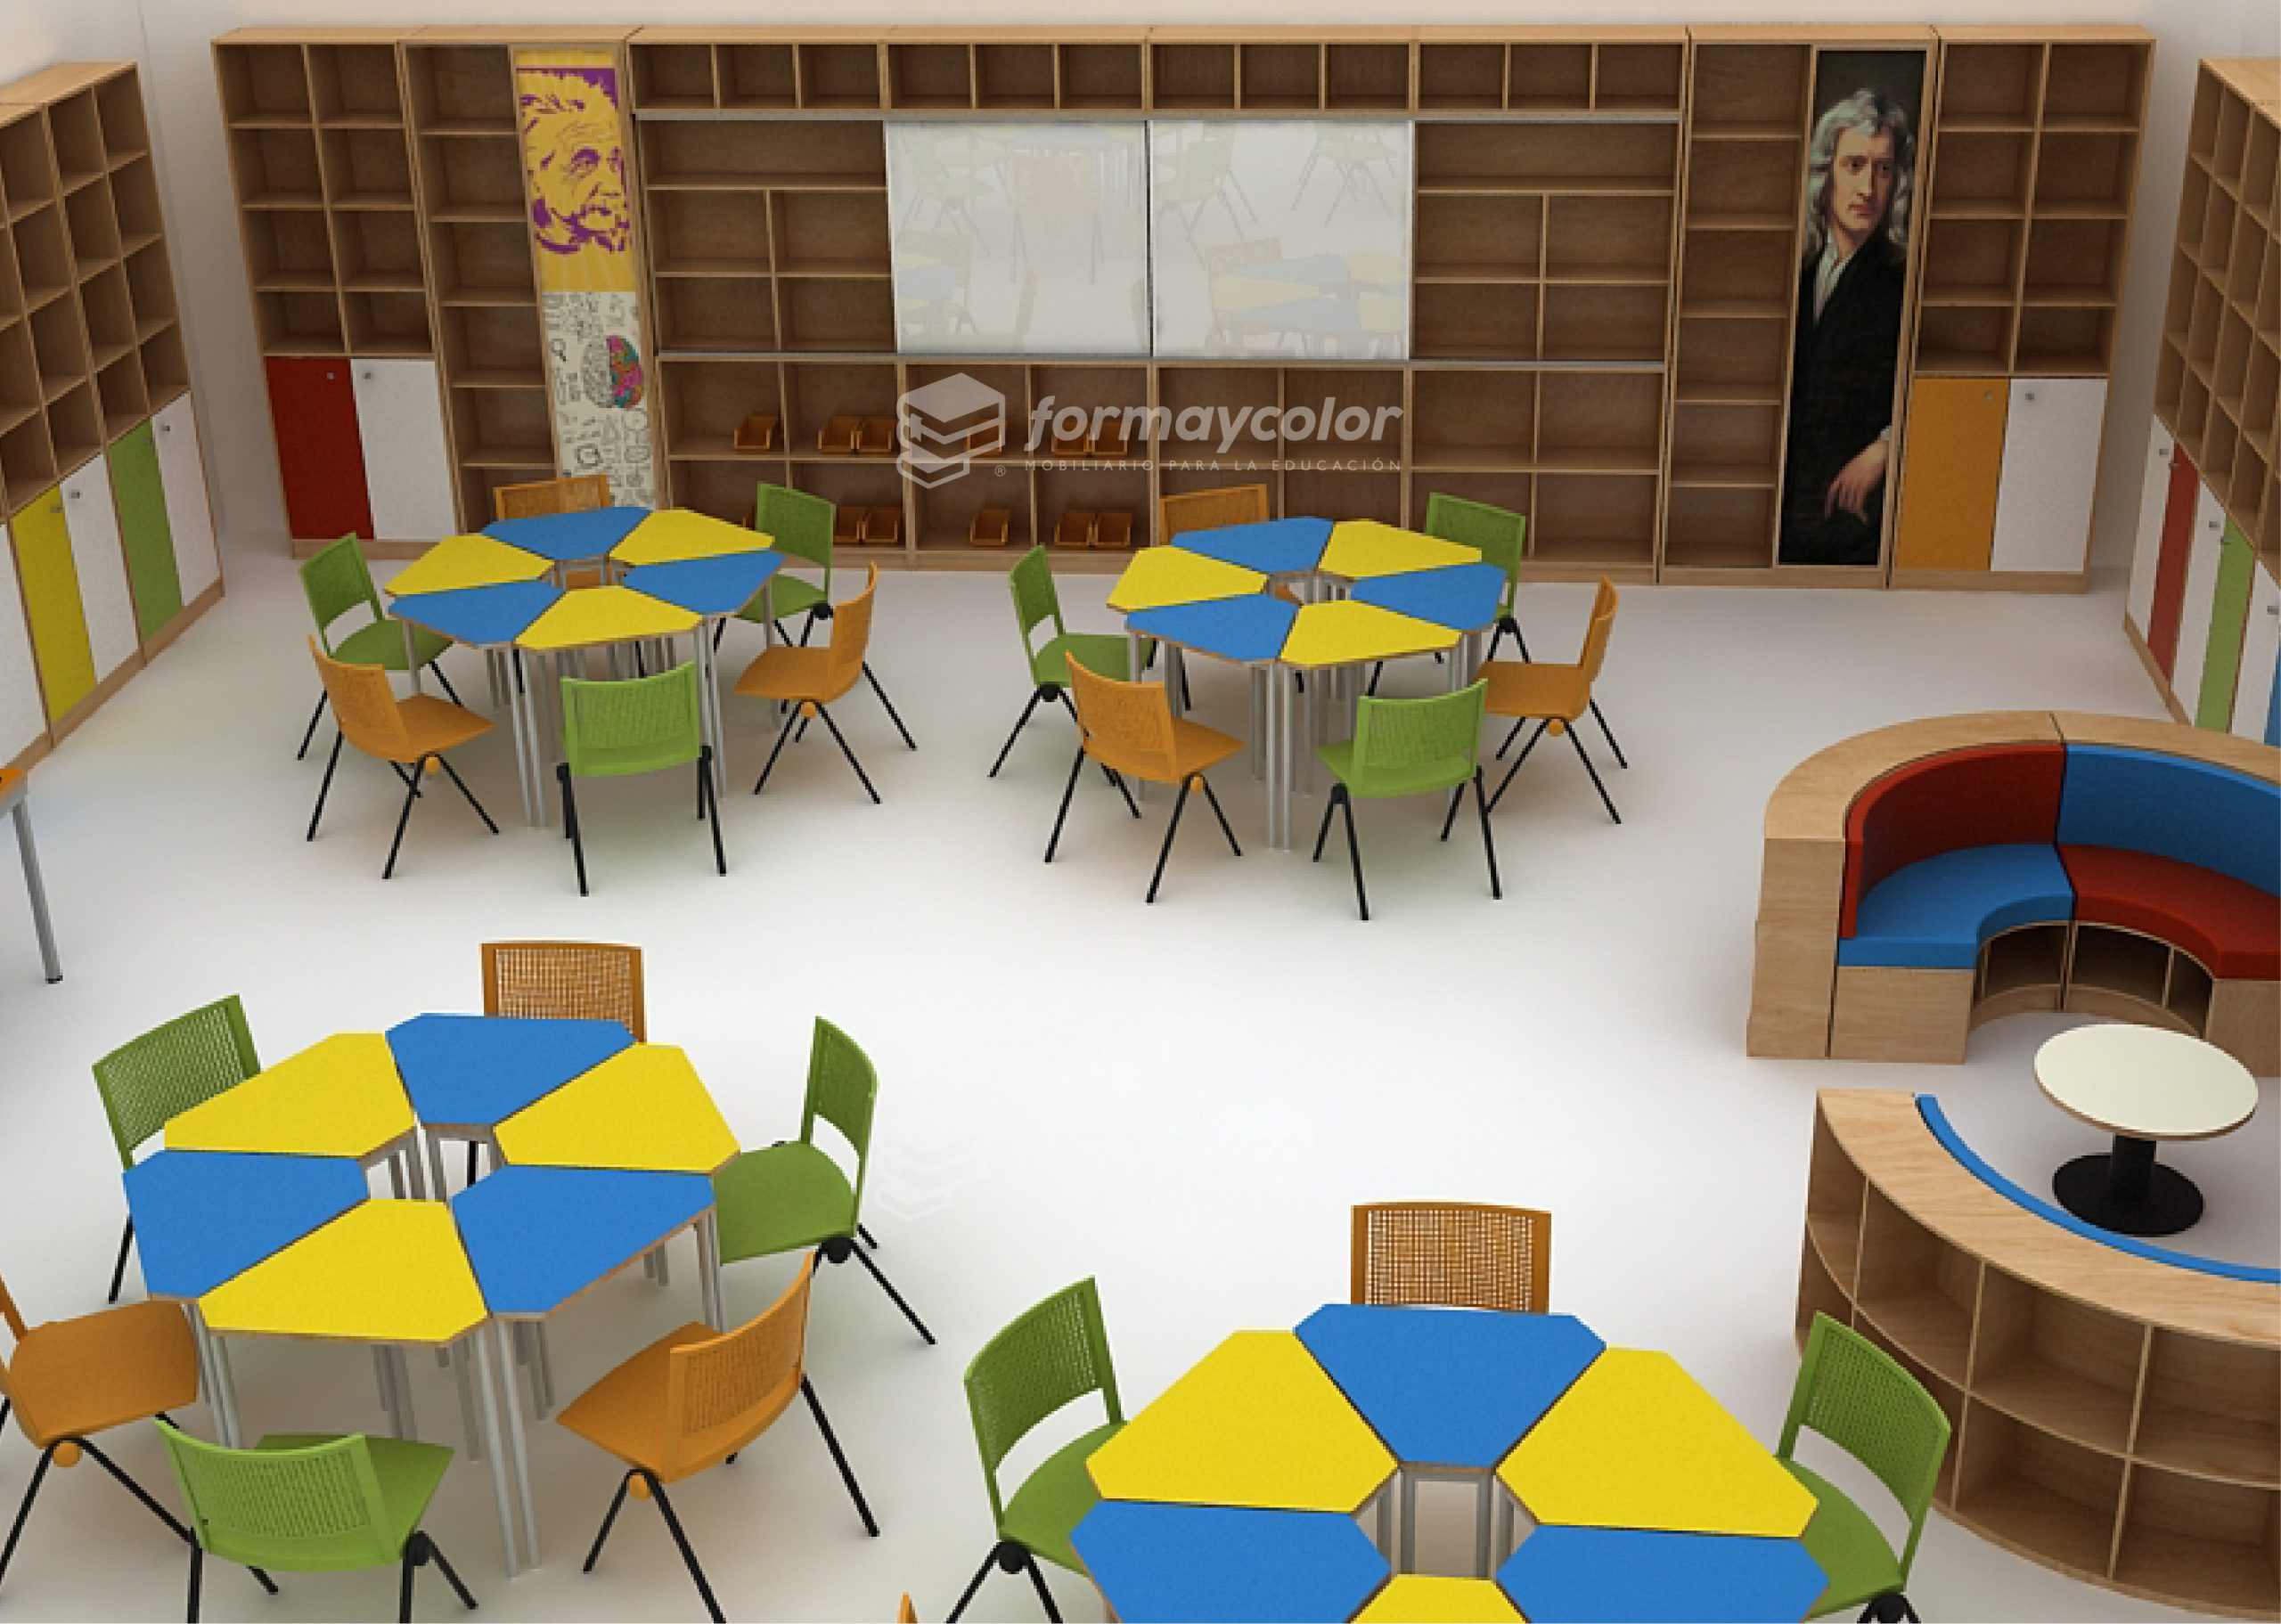 Sala ABP Salas de Aprendizaje Basado en Proyectos